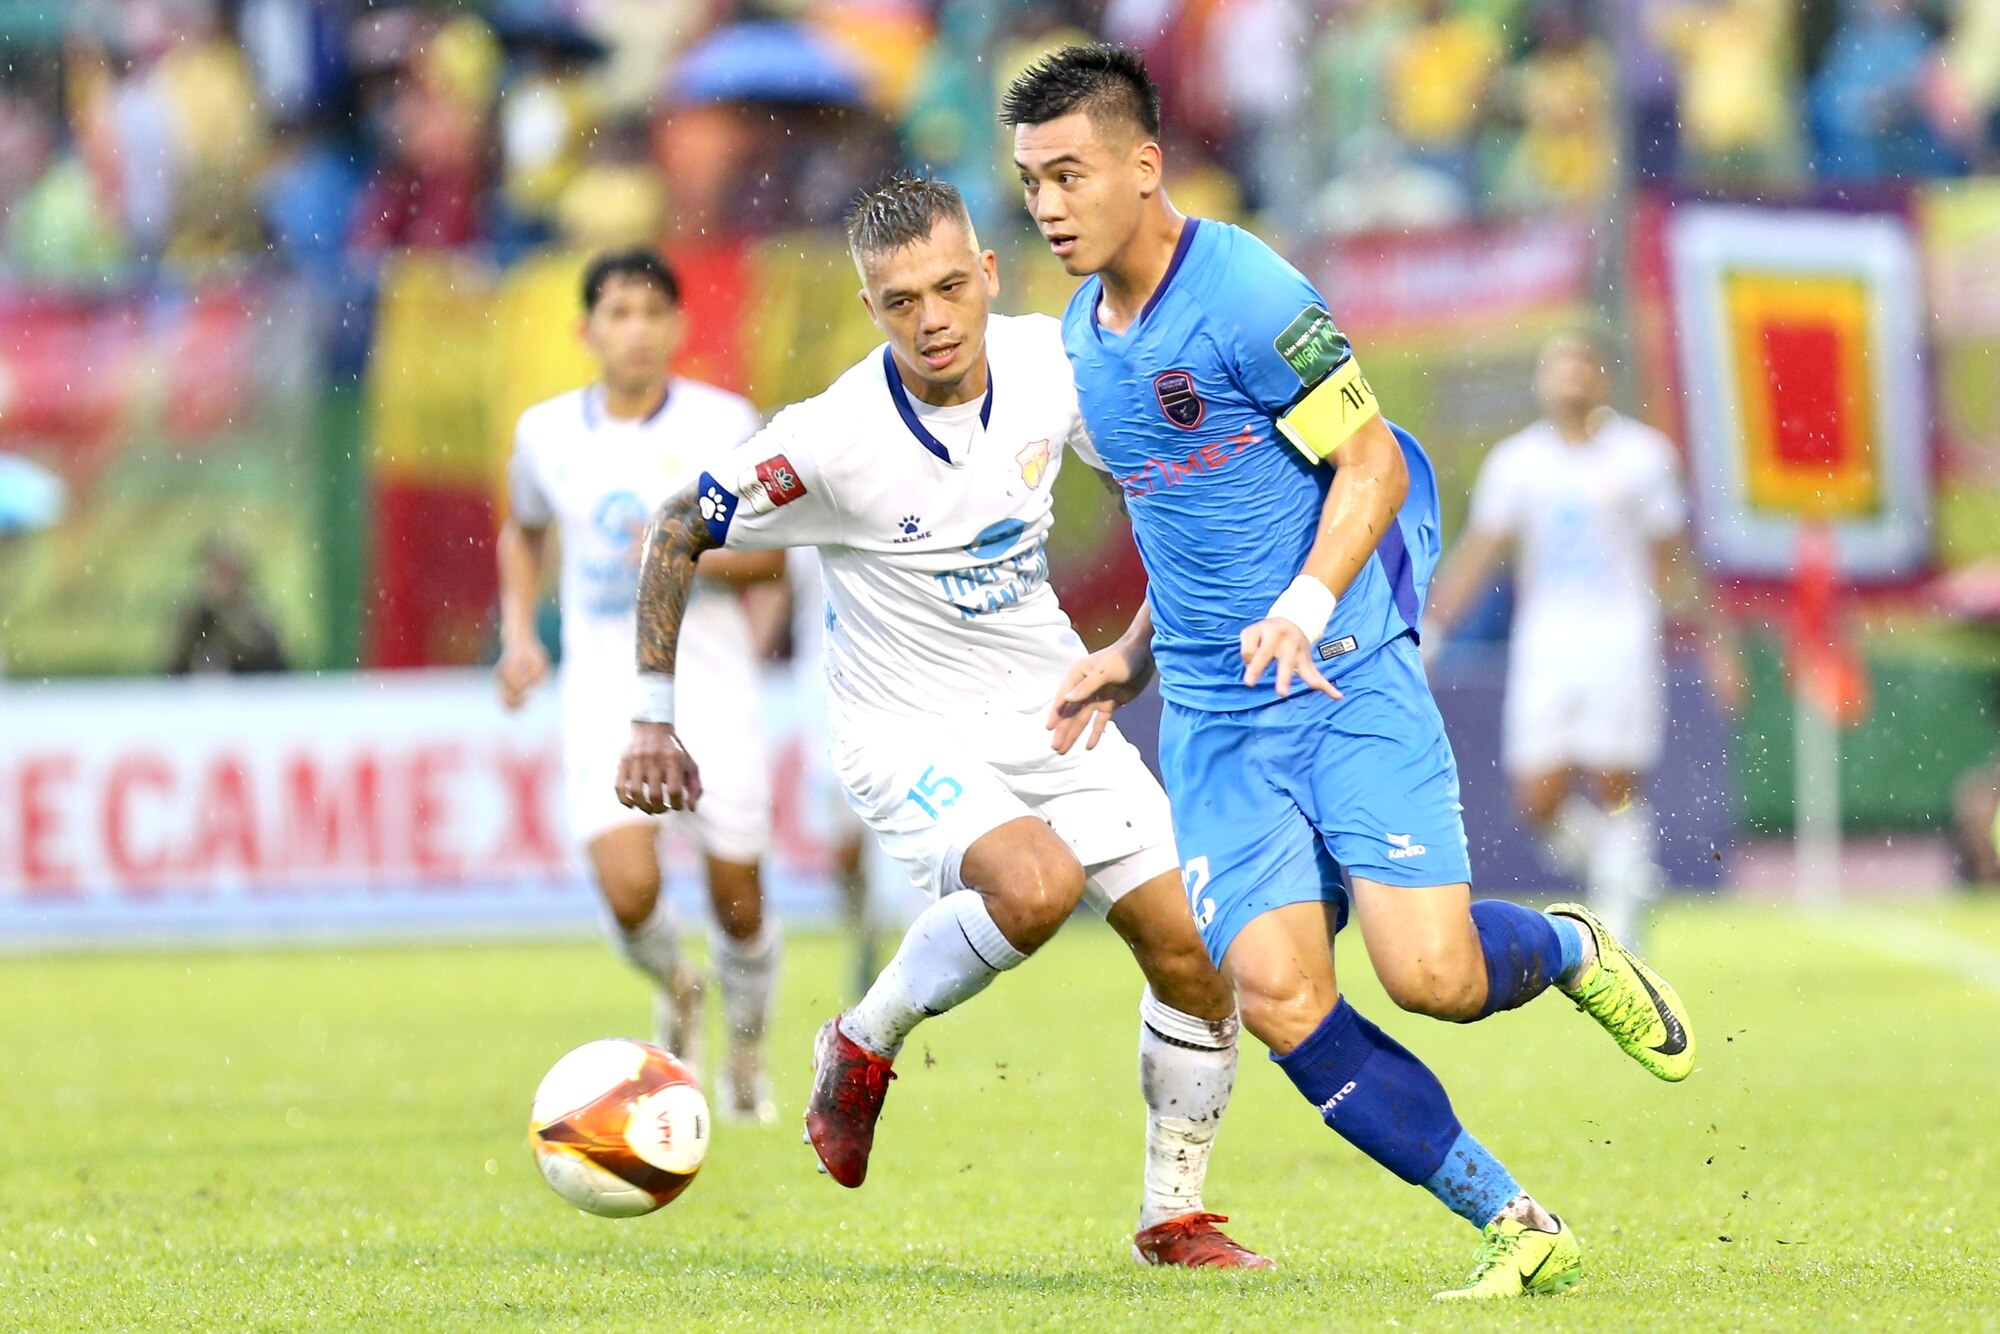 CLB Bình Dương lấy lại sức bật trong cuộc đua trụ hạng V-League - Ảnh 1.